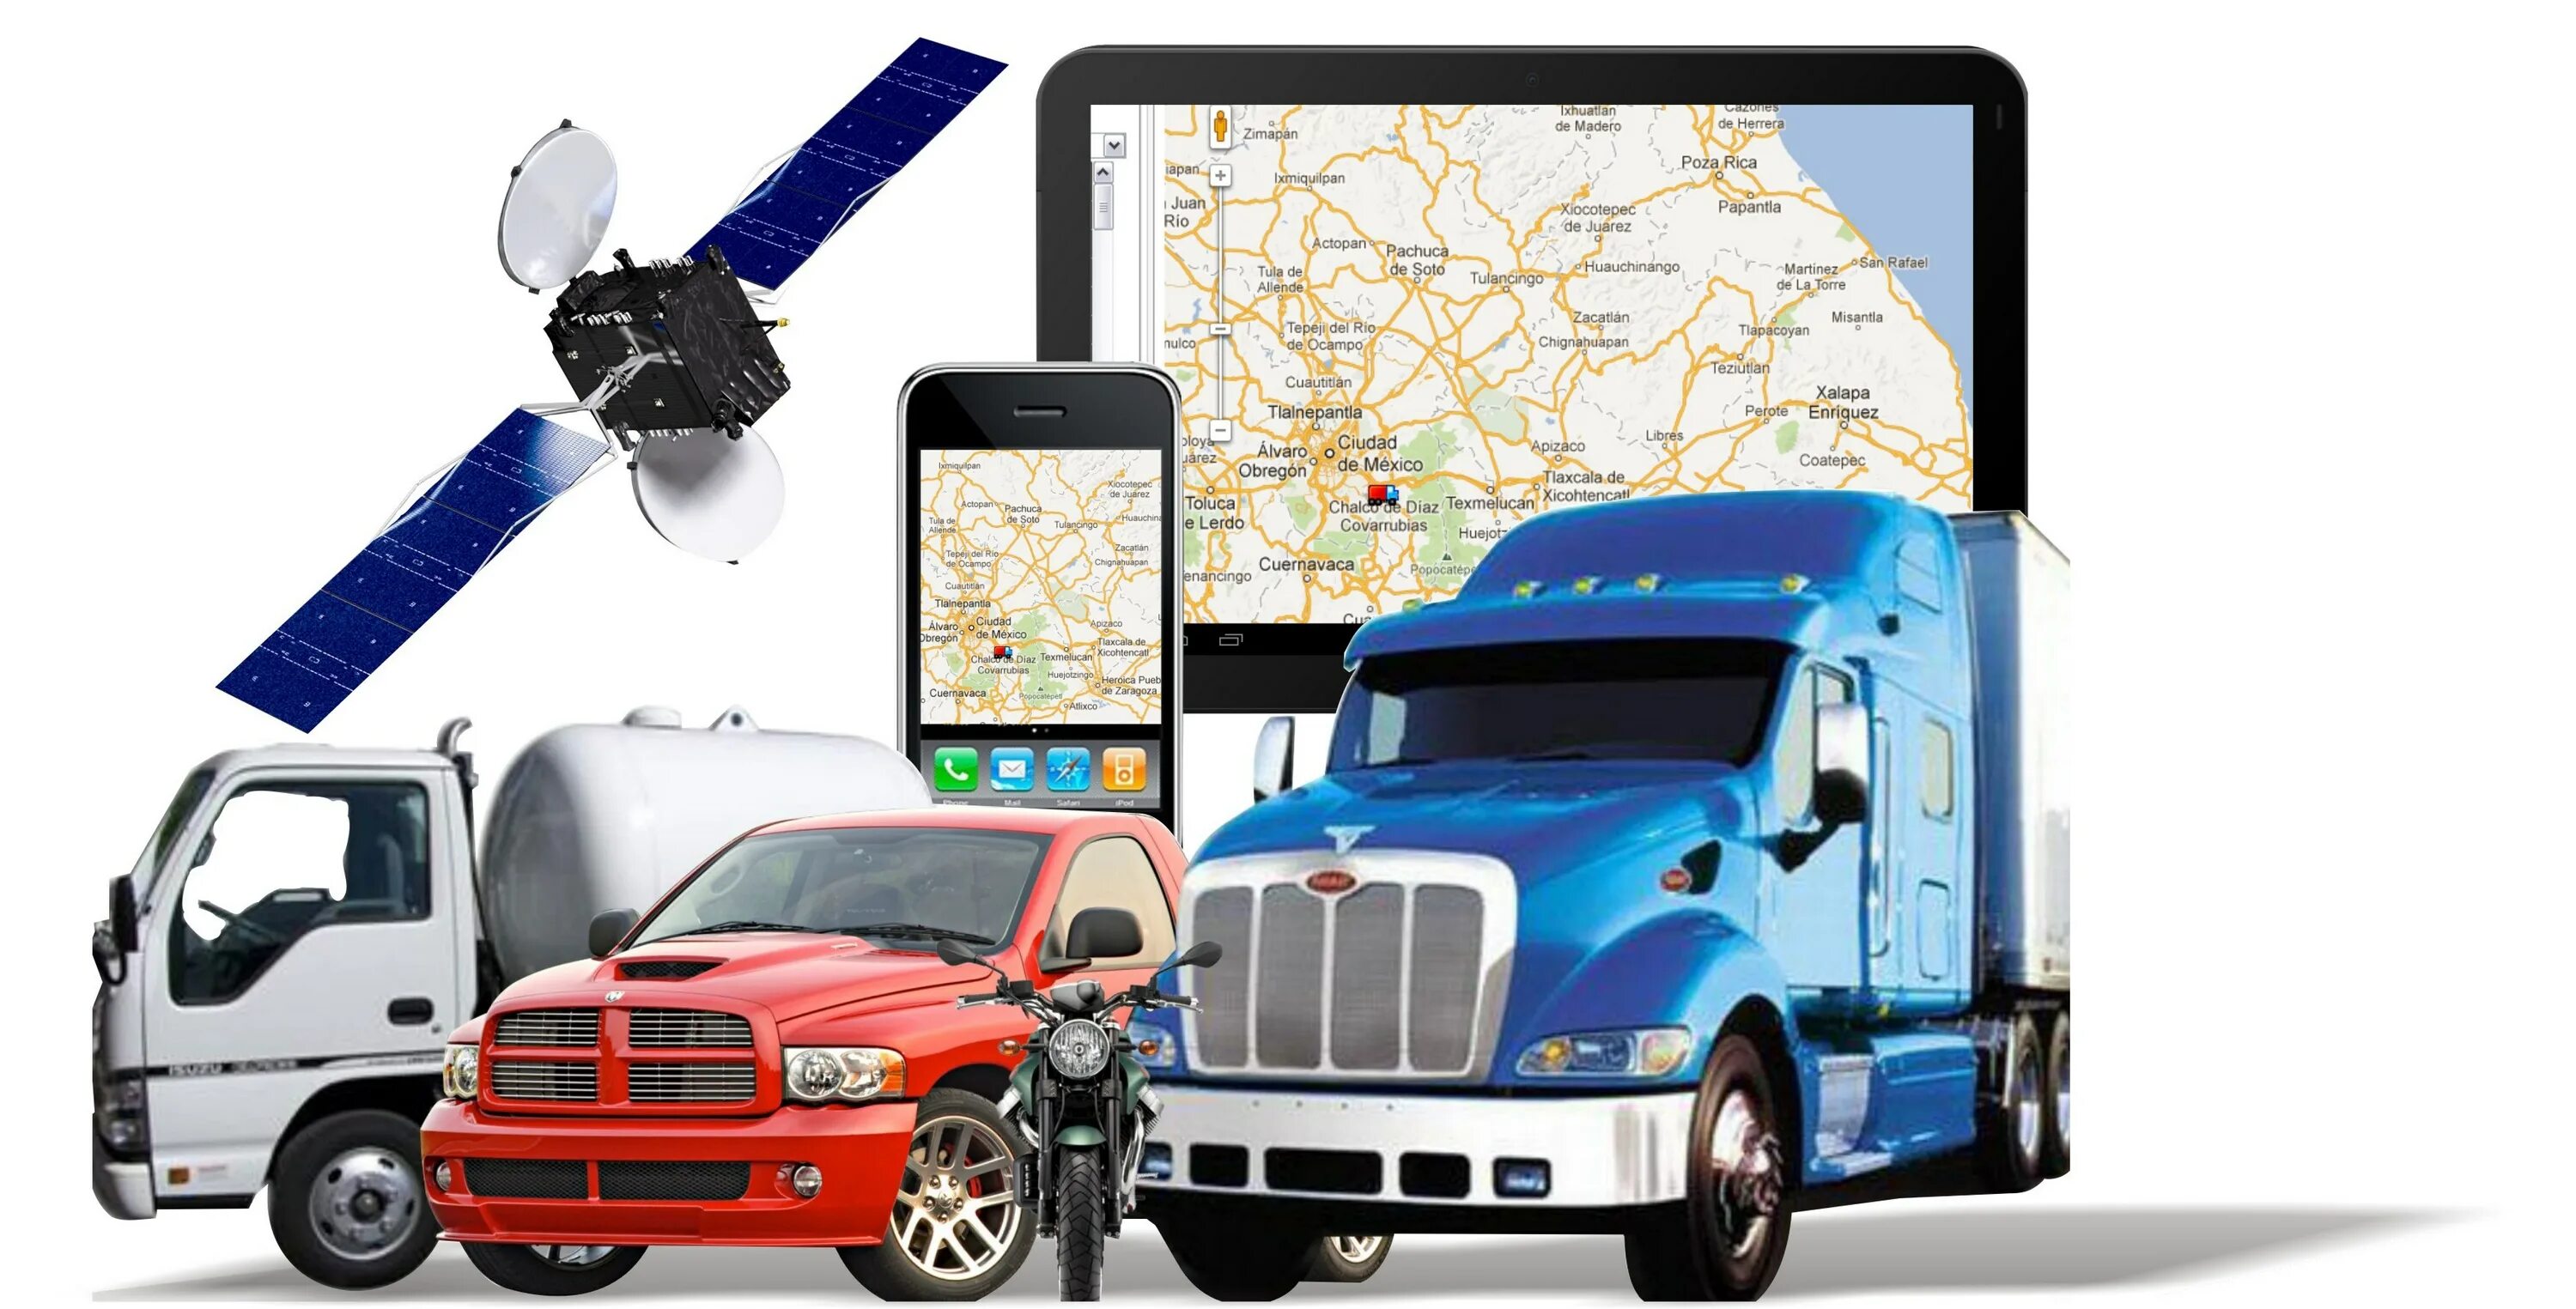 Контроль транспорта мониторинг gps. Спутниковый мониторинг транспорта ГЛОНАСС GPS. Подсистема GPS/ ГЛОНАСС мониторинга. Система GPS контроля транспорта. Навигационная система GPS ГЛОНАСС Валиот.